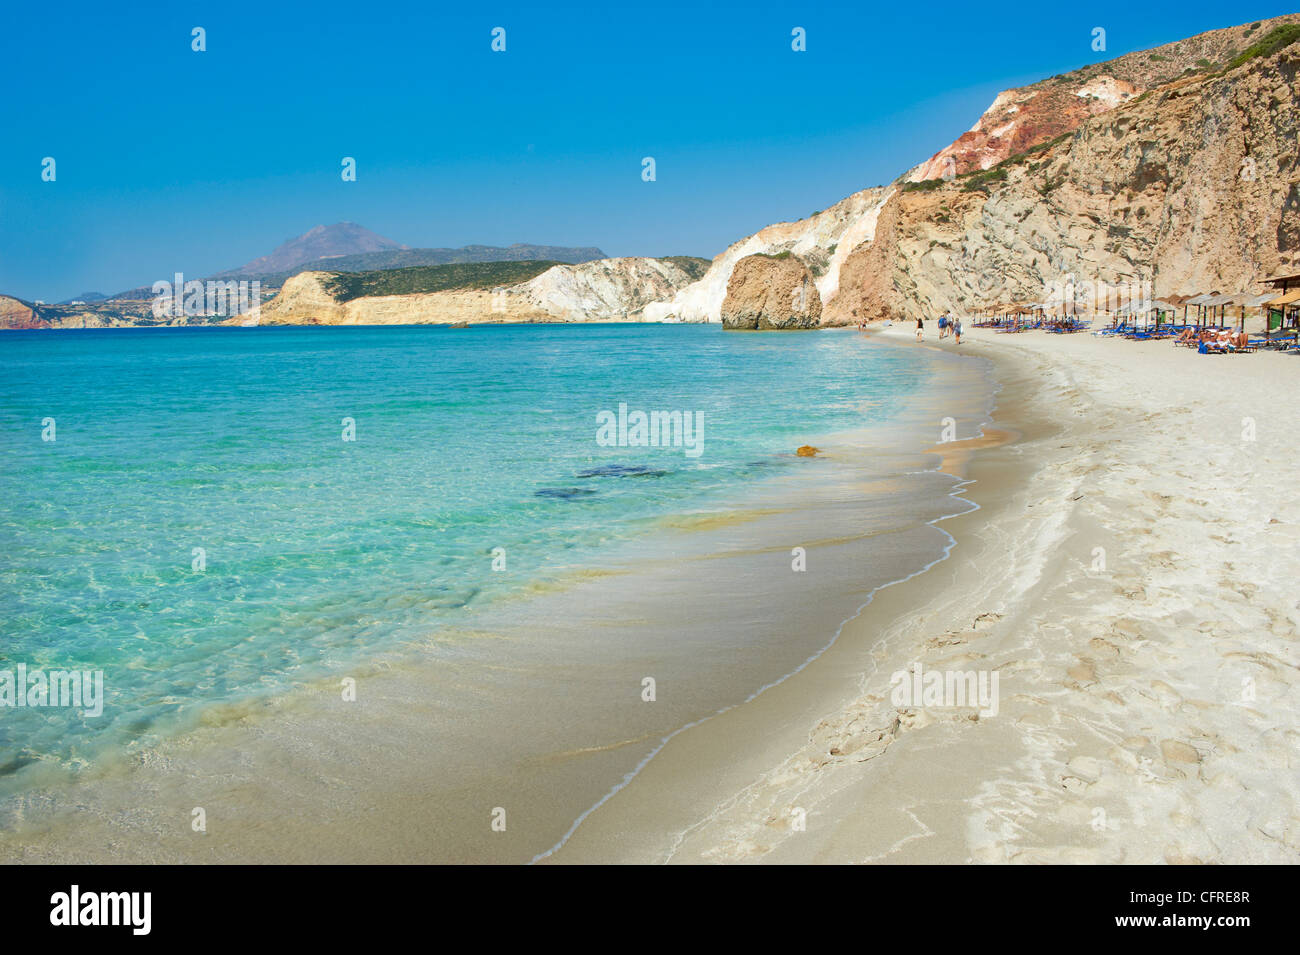 Firiplaka Strand, Milos, Cyclades Inseln, griechische Inseln, Ägäis, Griechenland, Europa Stockfoto